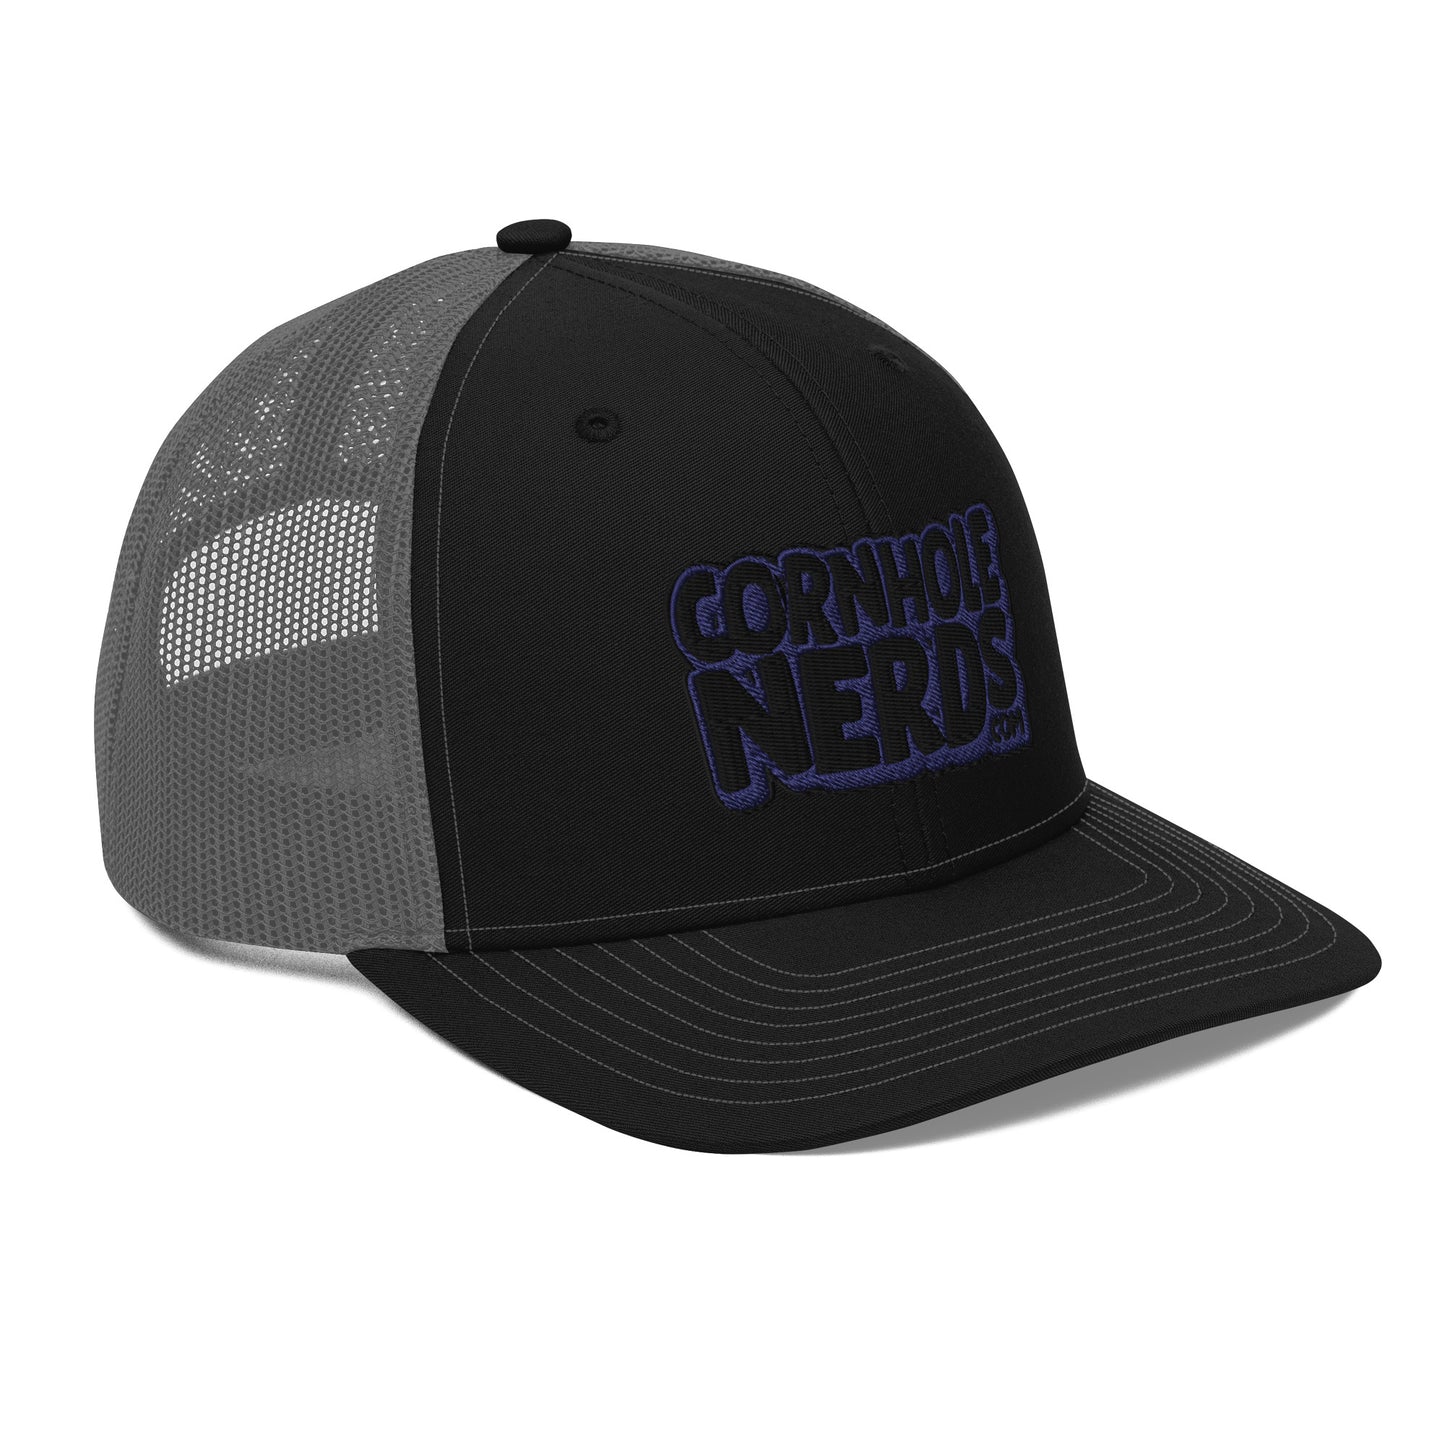 black/navy nerds logo Richardson 112 snapback Trucker hat